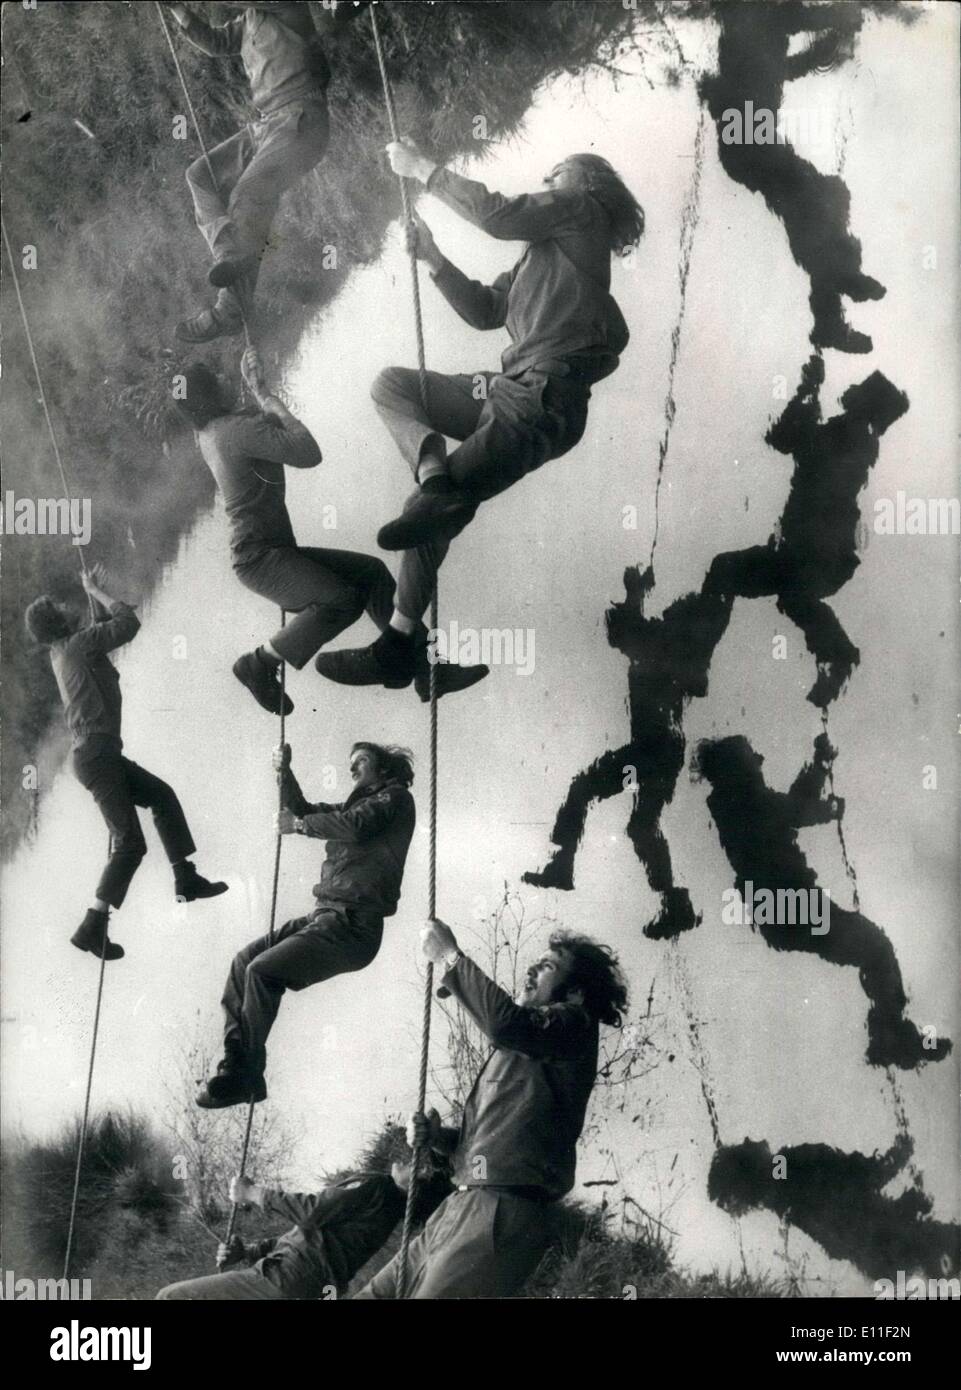 Juillet 07, 1977 - Ces jeunes hommes ne sont pas traversant une rivière plus enseigné des cordes pour l'absence d'un pont. Il s'agit d'un exercice militaire qui les apprentis dans une usine d'électricité à Luebbenau terminent dans un effort pour former les militaires nationaux pour les citoyens de l'armée de l'Allemagne. Banque D'Images